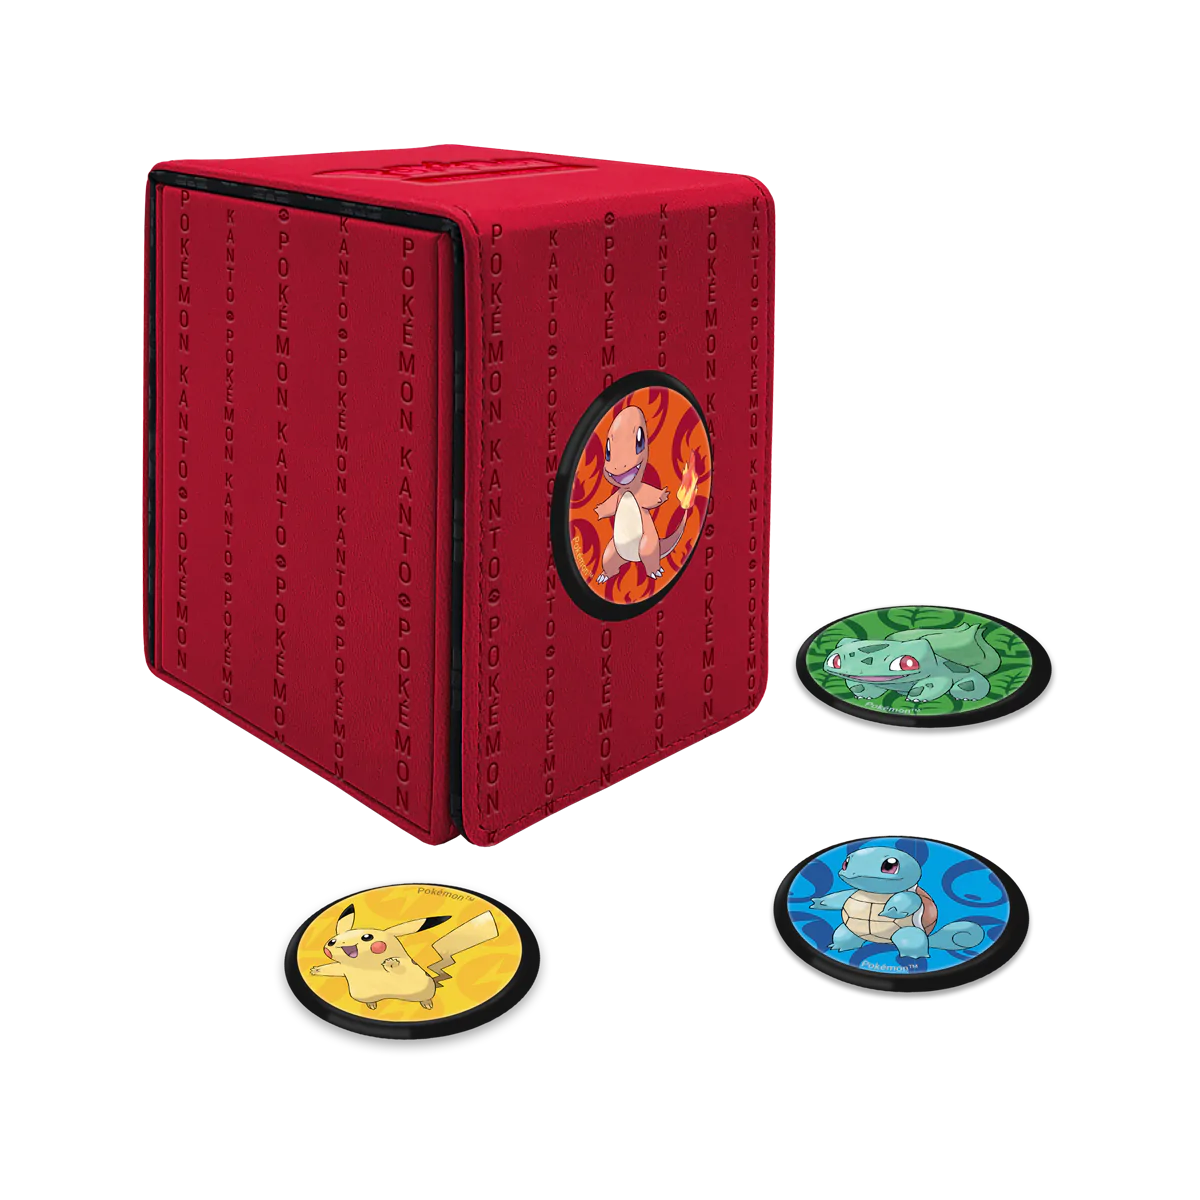 Ultra Pro Pokemon: Kanto Alcove Click 100+ Deck Box